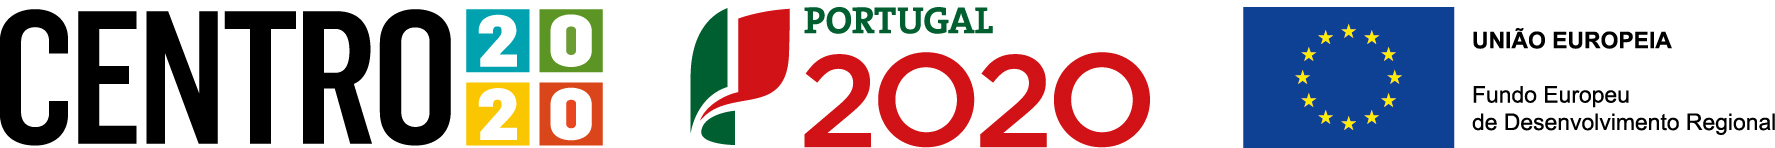 Projecto Cofinanciado por: Centro2020 - Portugal 2020 - UniÃ£o Europeia